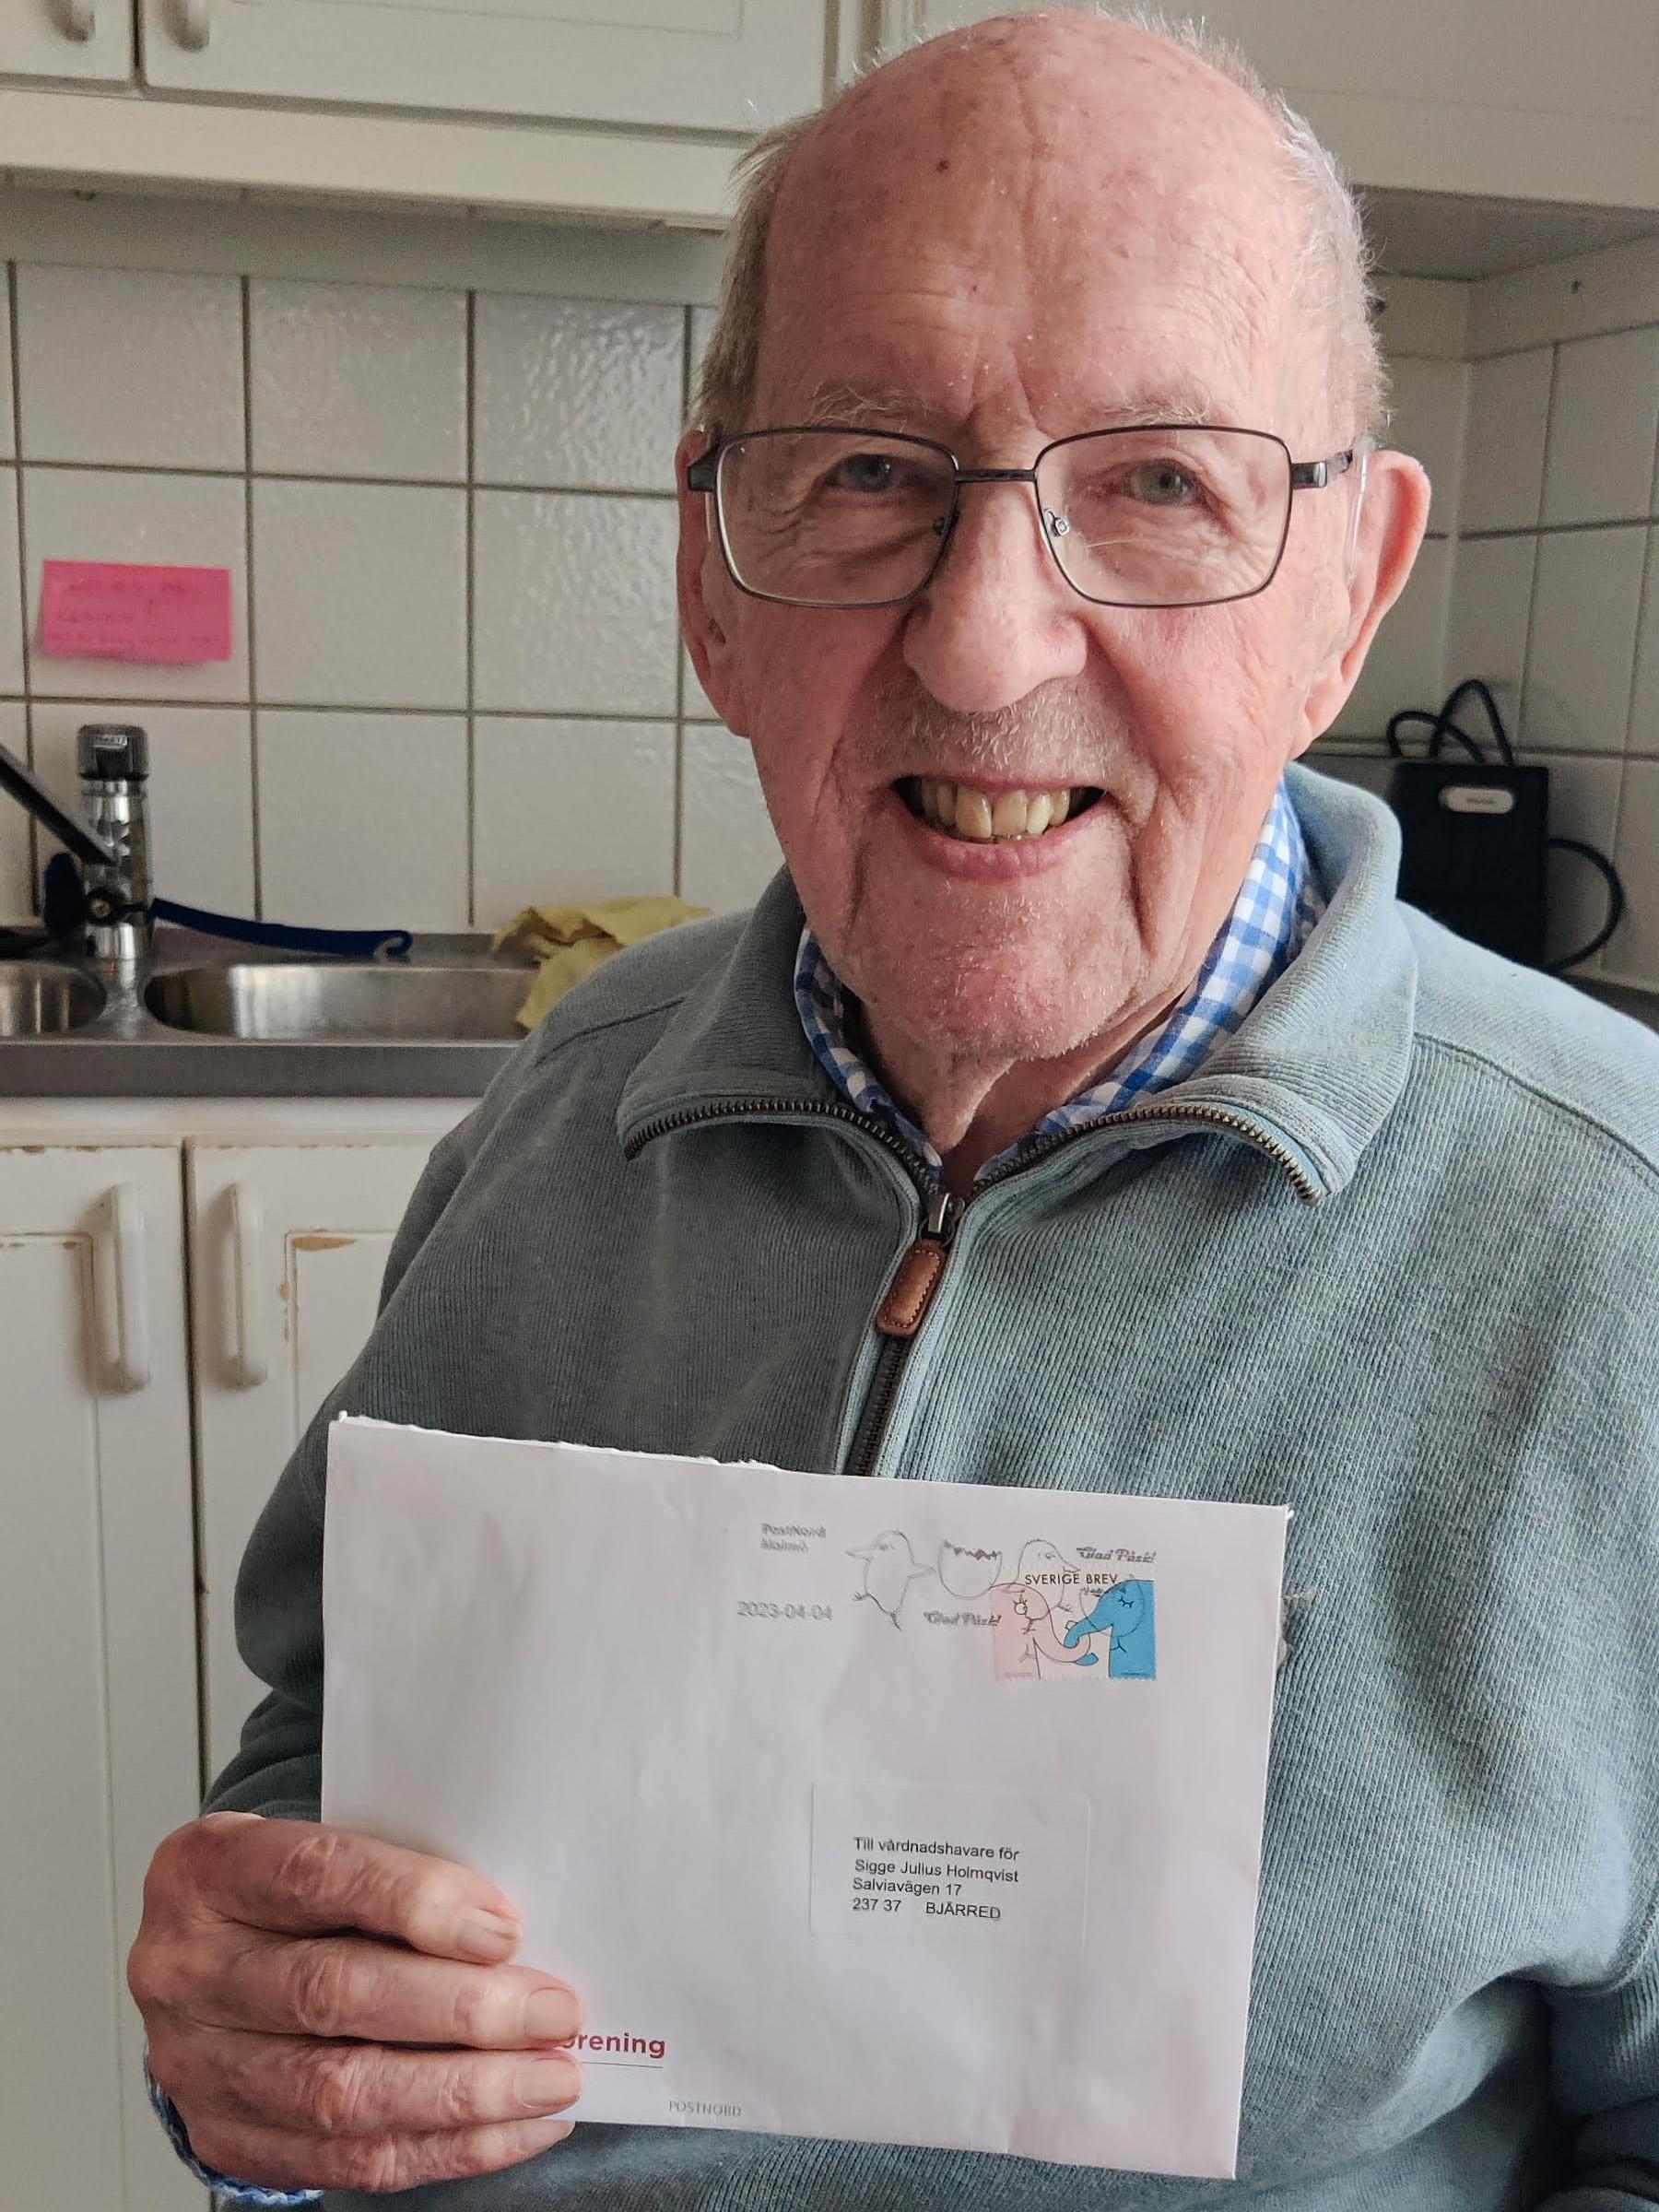 104-årige Sigge Holmqvist och det överraskande brevet.